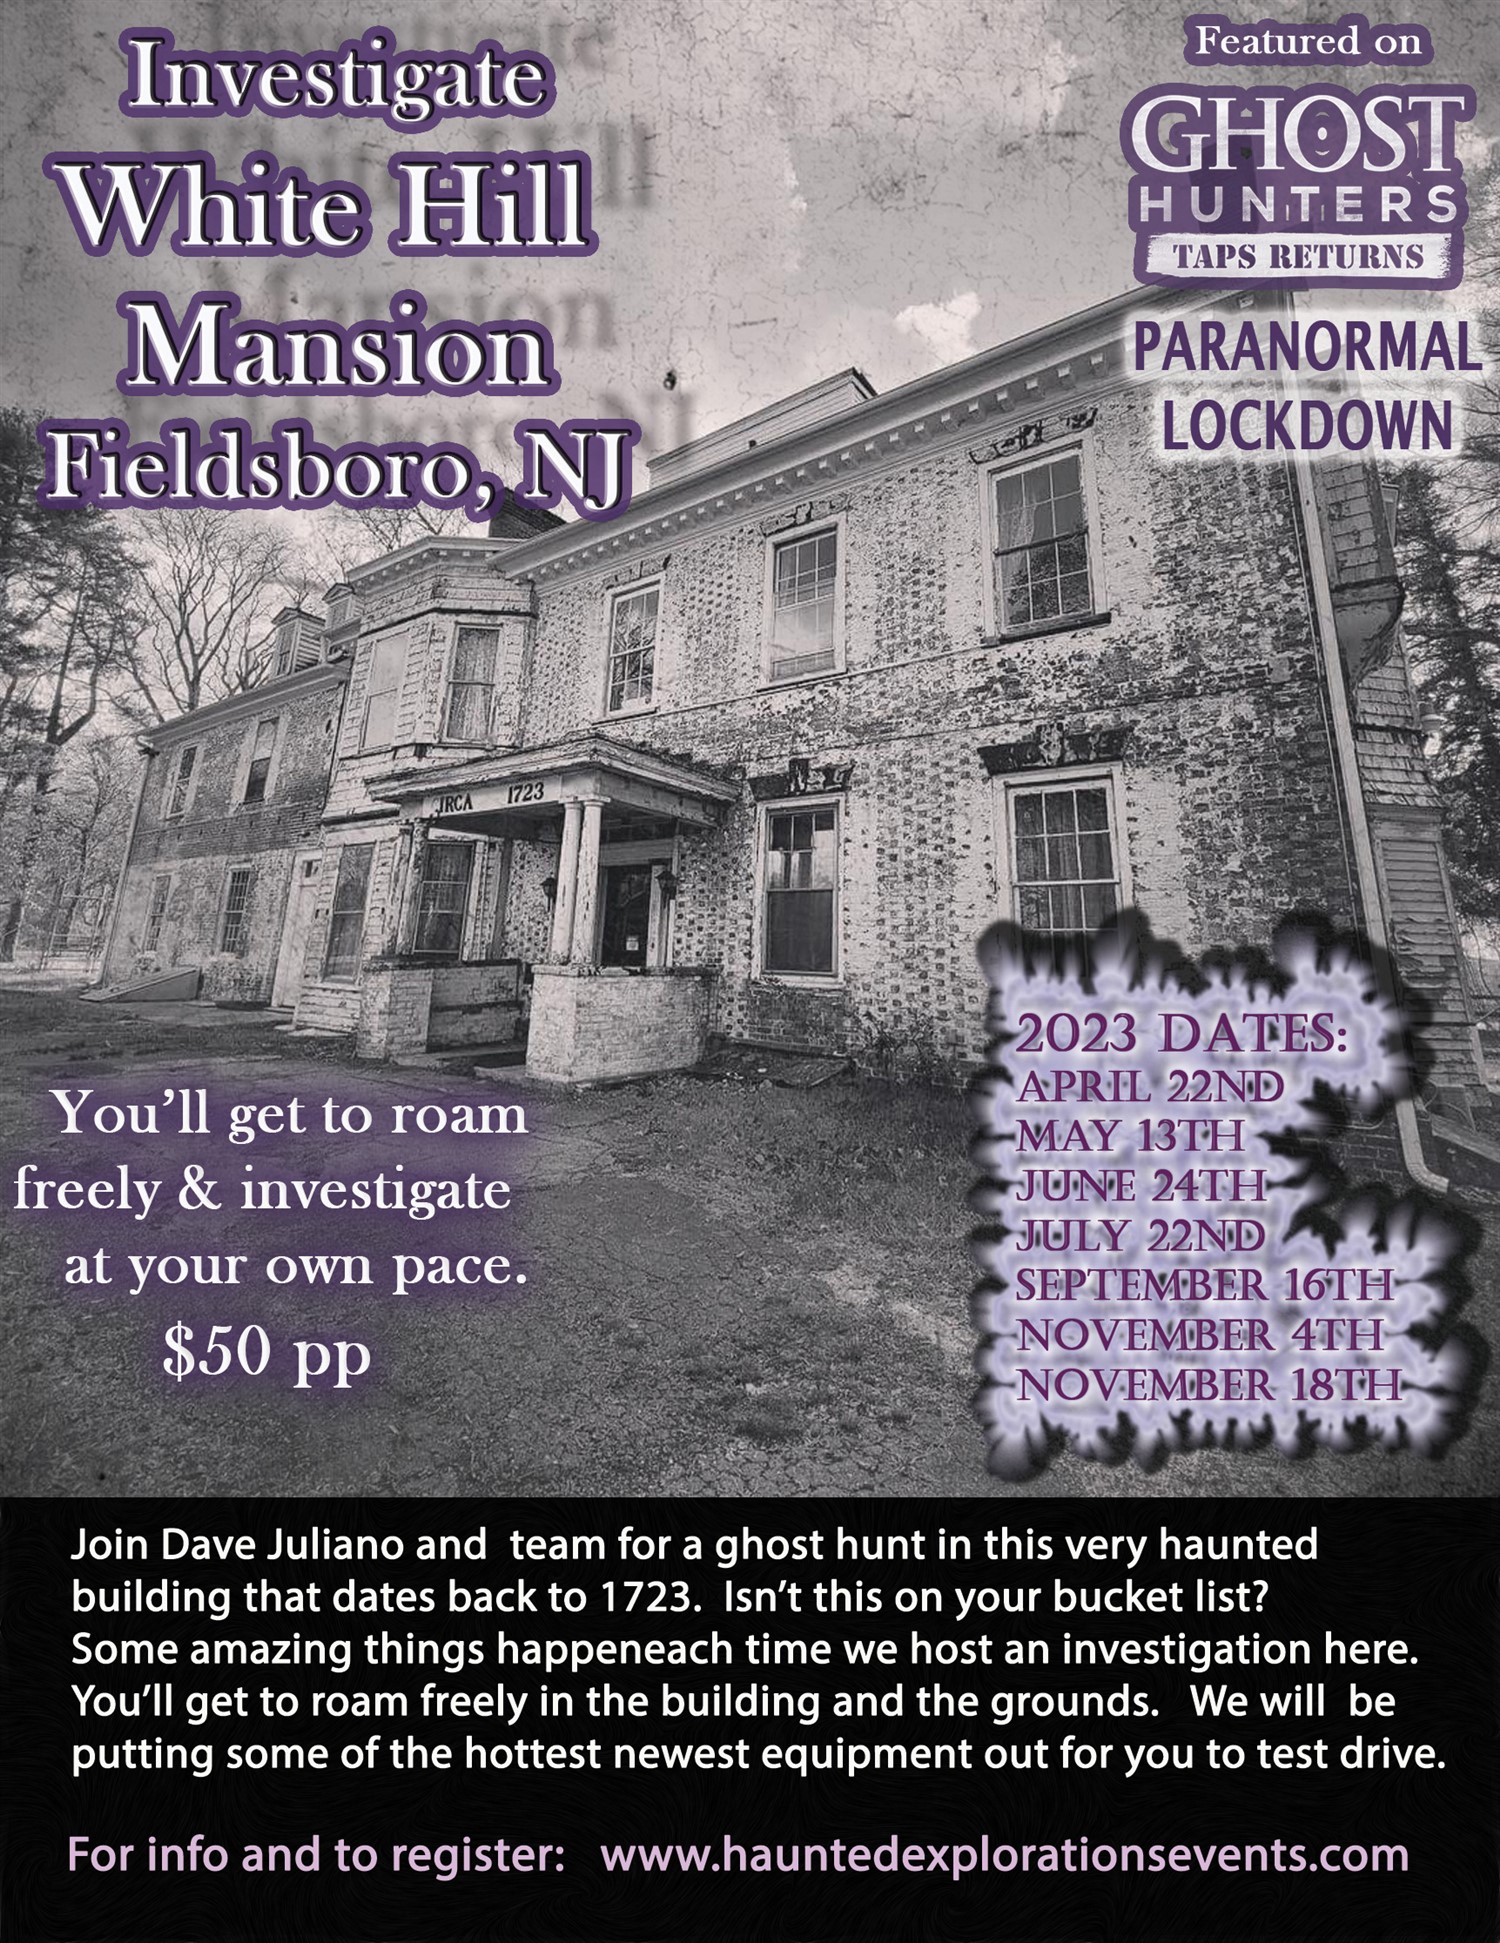 Investigate Whitehill Mansion  on avr. 22, 20:00@White Hill Mansion - Achetez des billets et obtenez des informations surThriller Events thriller.events